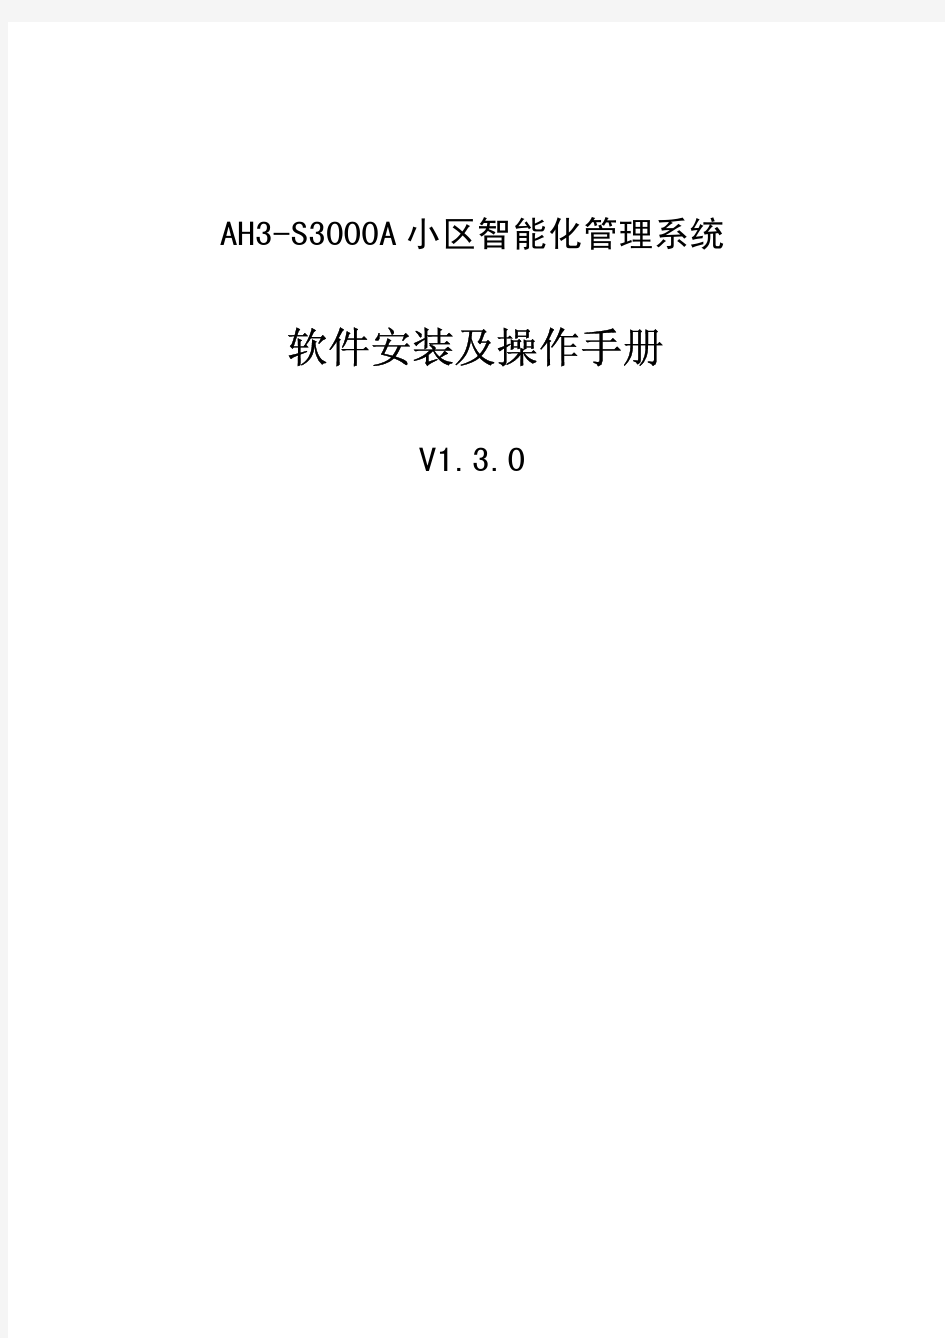 AH3-S3000A软件操作手册